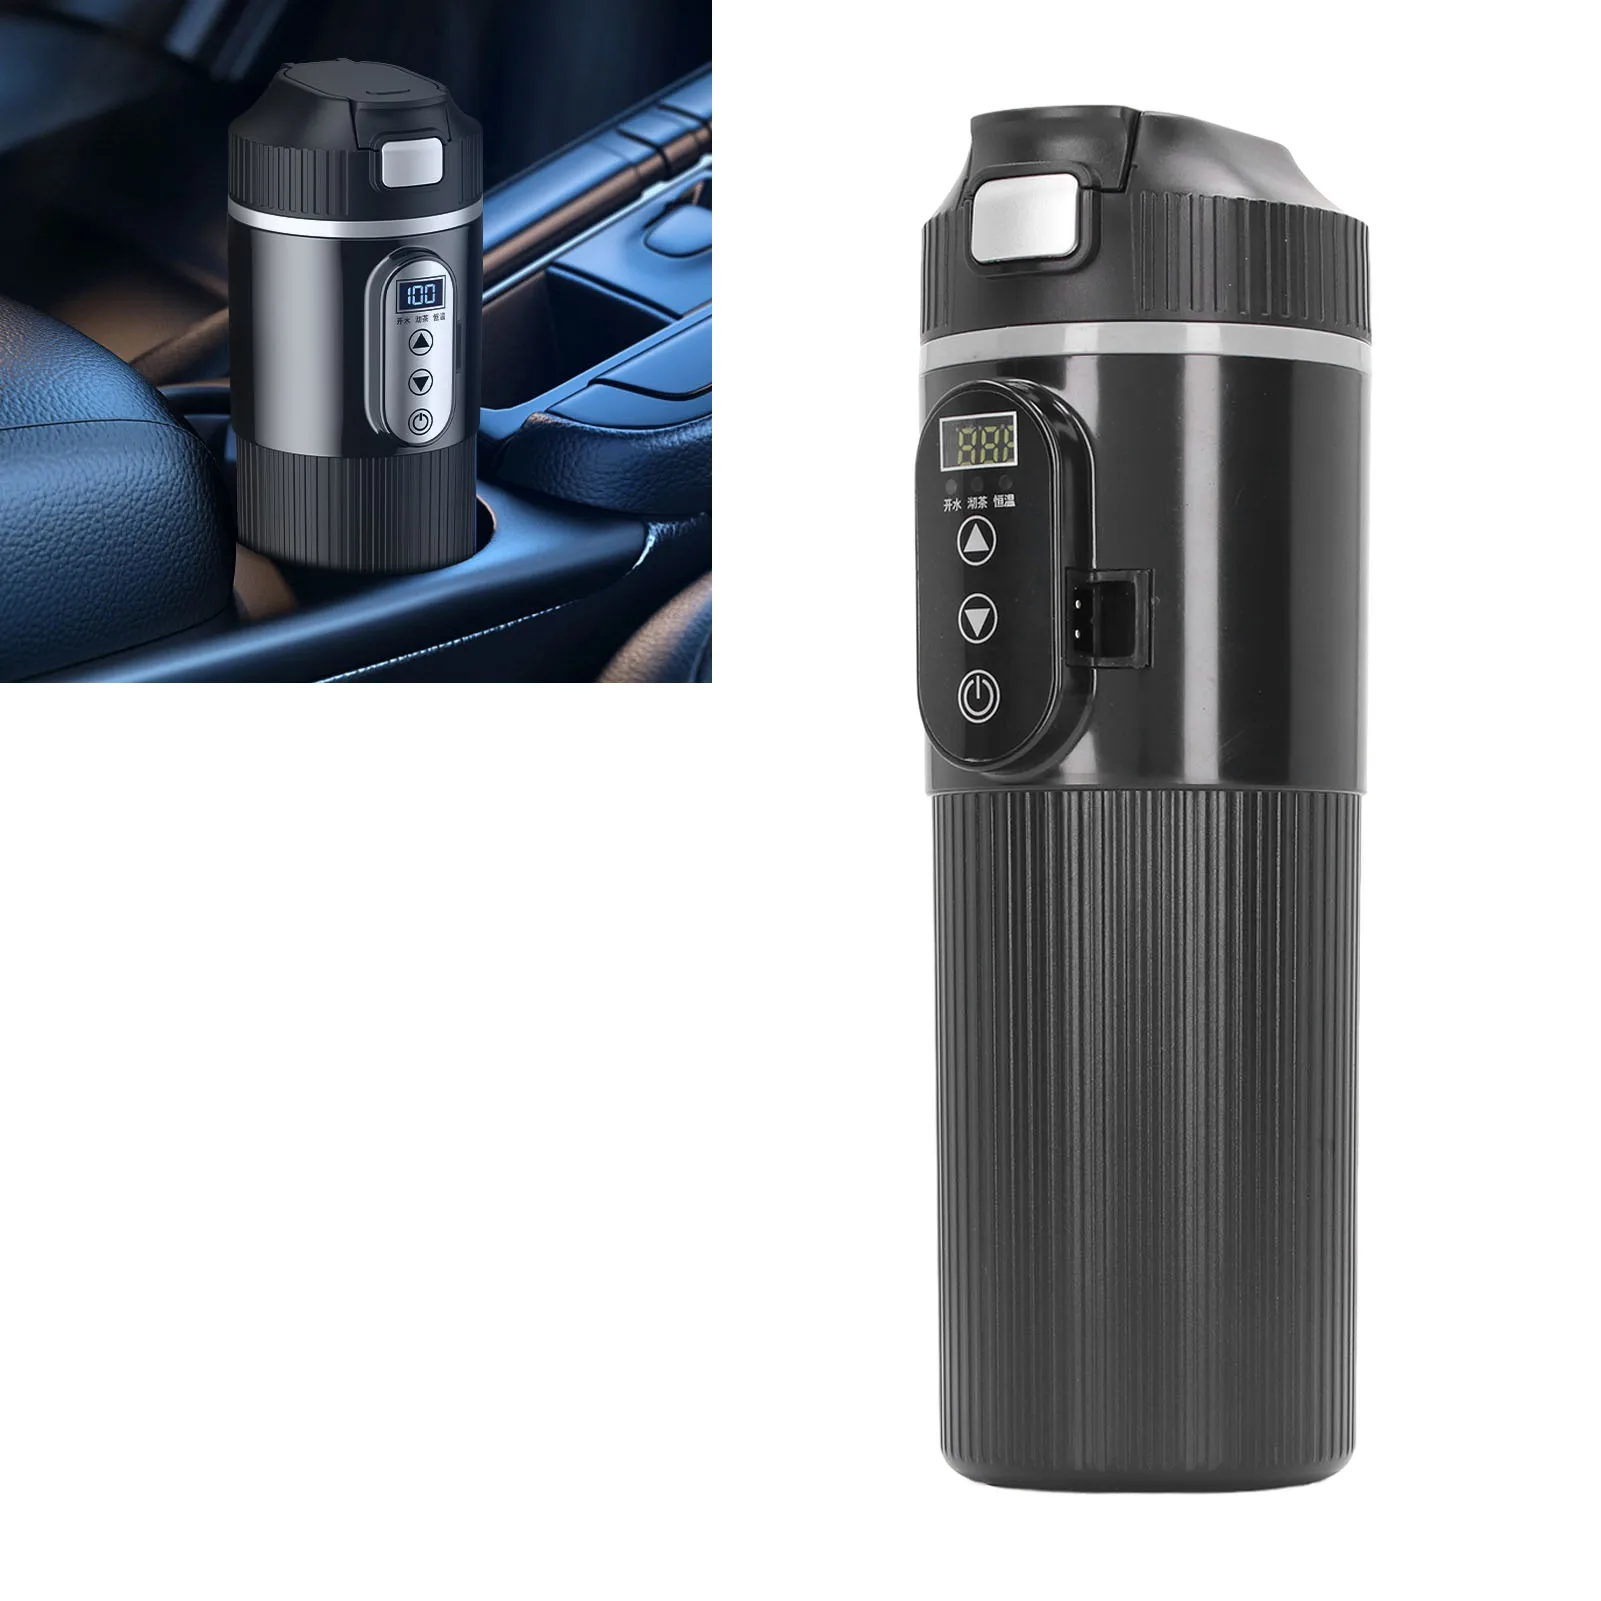 

Автомобильный Электрический чайник 500 мл, автомобильный нагревательный стакан из нержавеющей стали, интеллектуальный дисплей температуры, электрическая нагревательная кружка с сигаретой